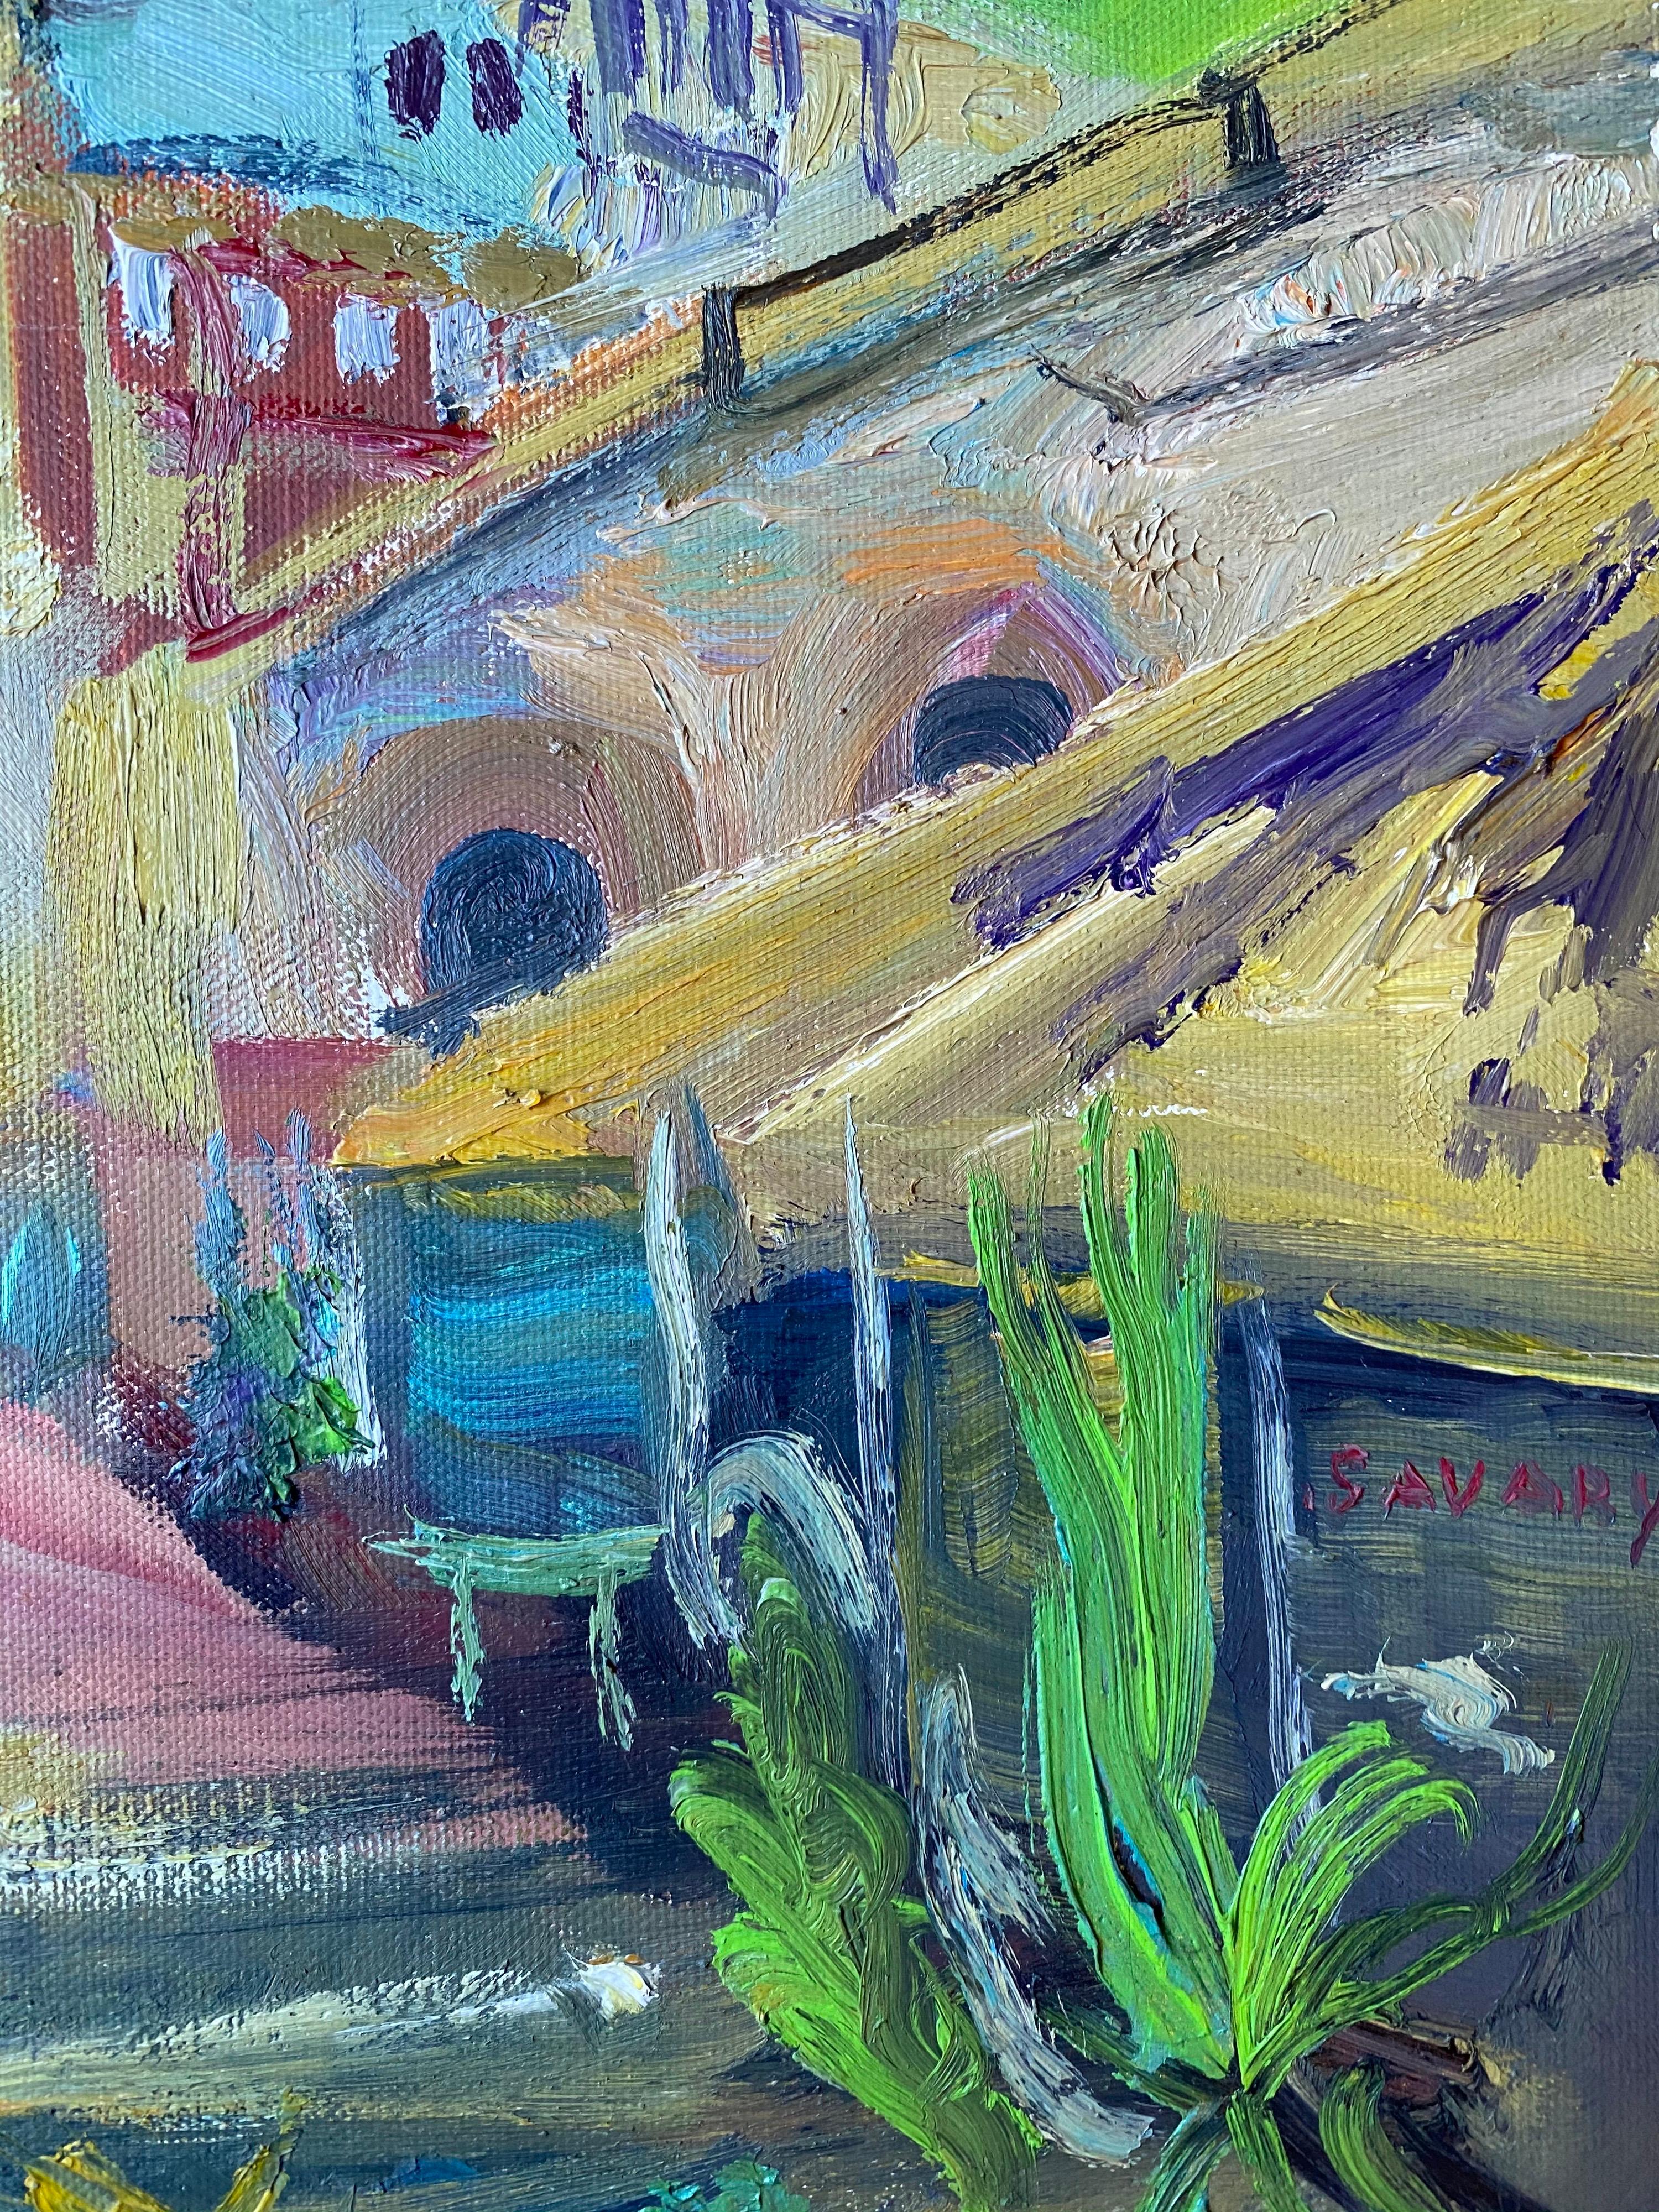 Cours Saleya Nice Market Old Town, peinture à l'huile originale signée - Post-impressionnisme Painting par Robert Savary